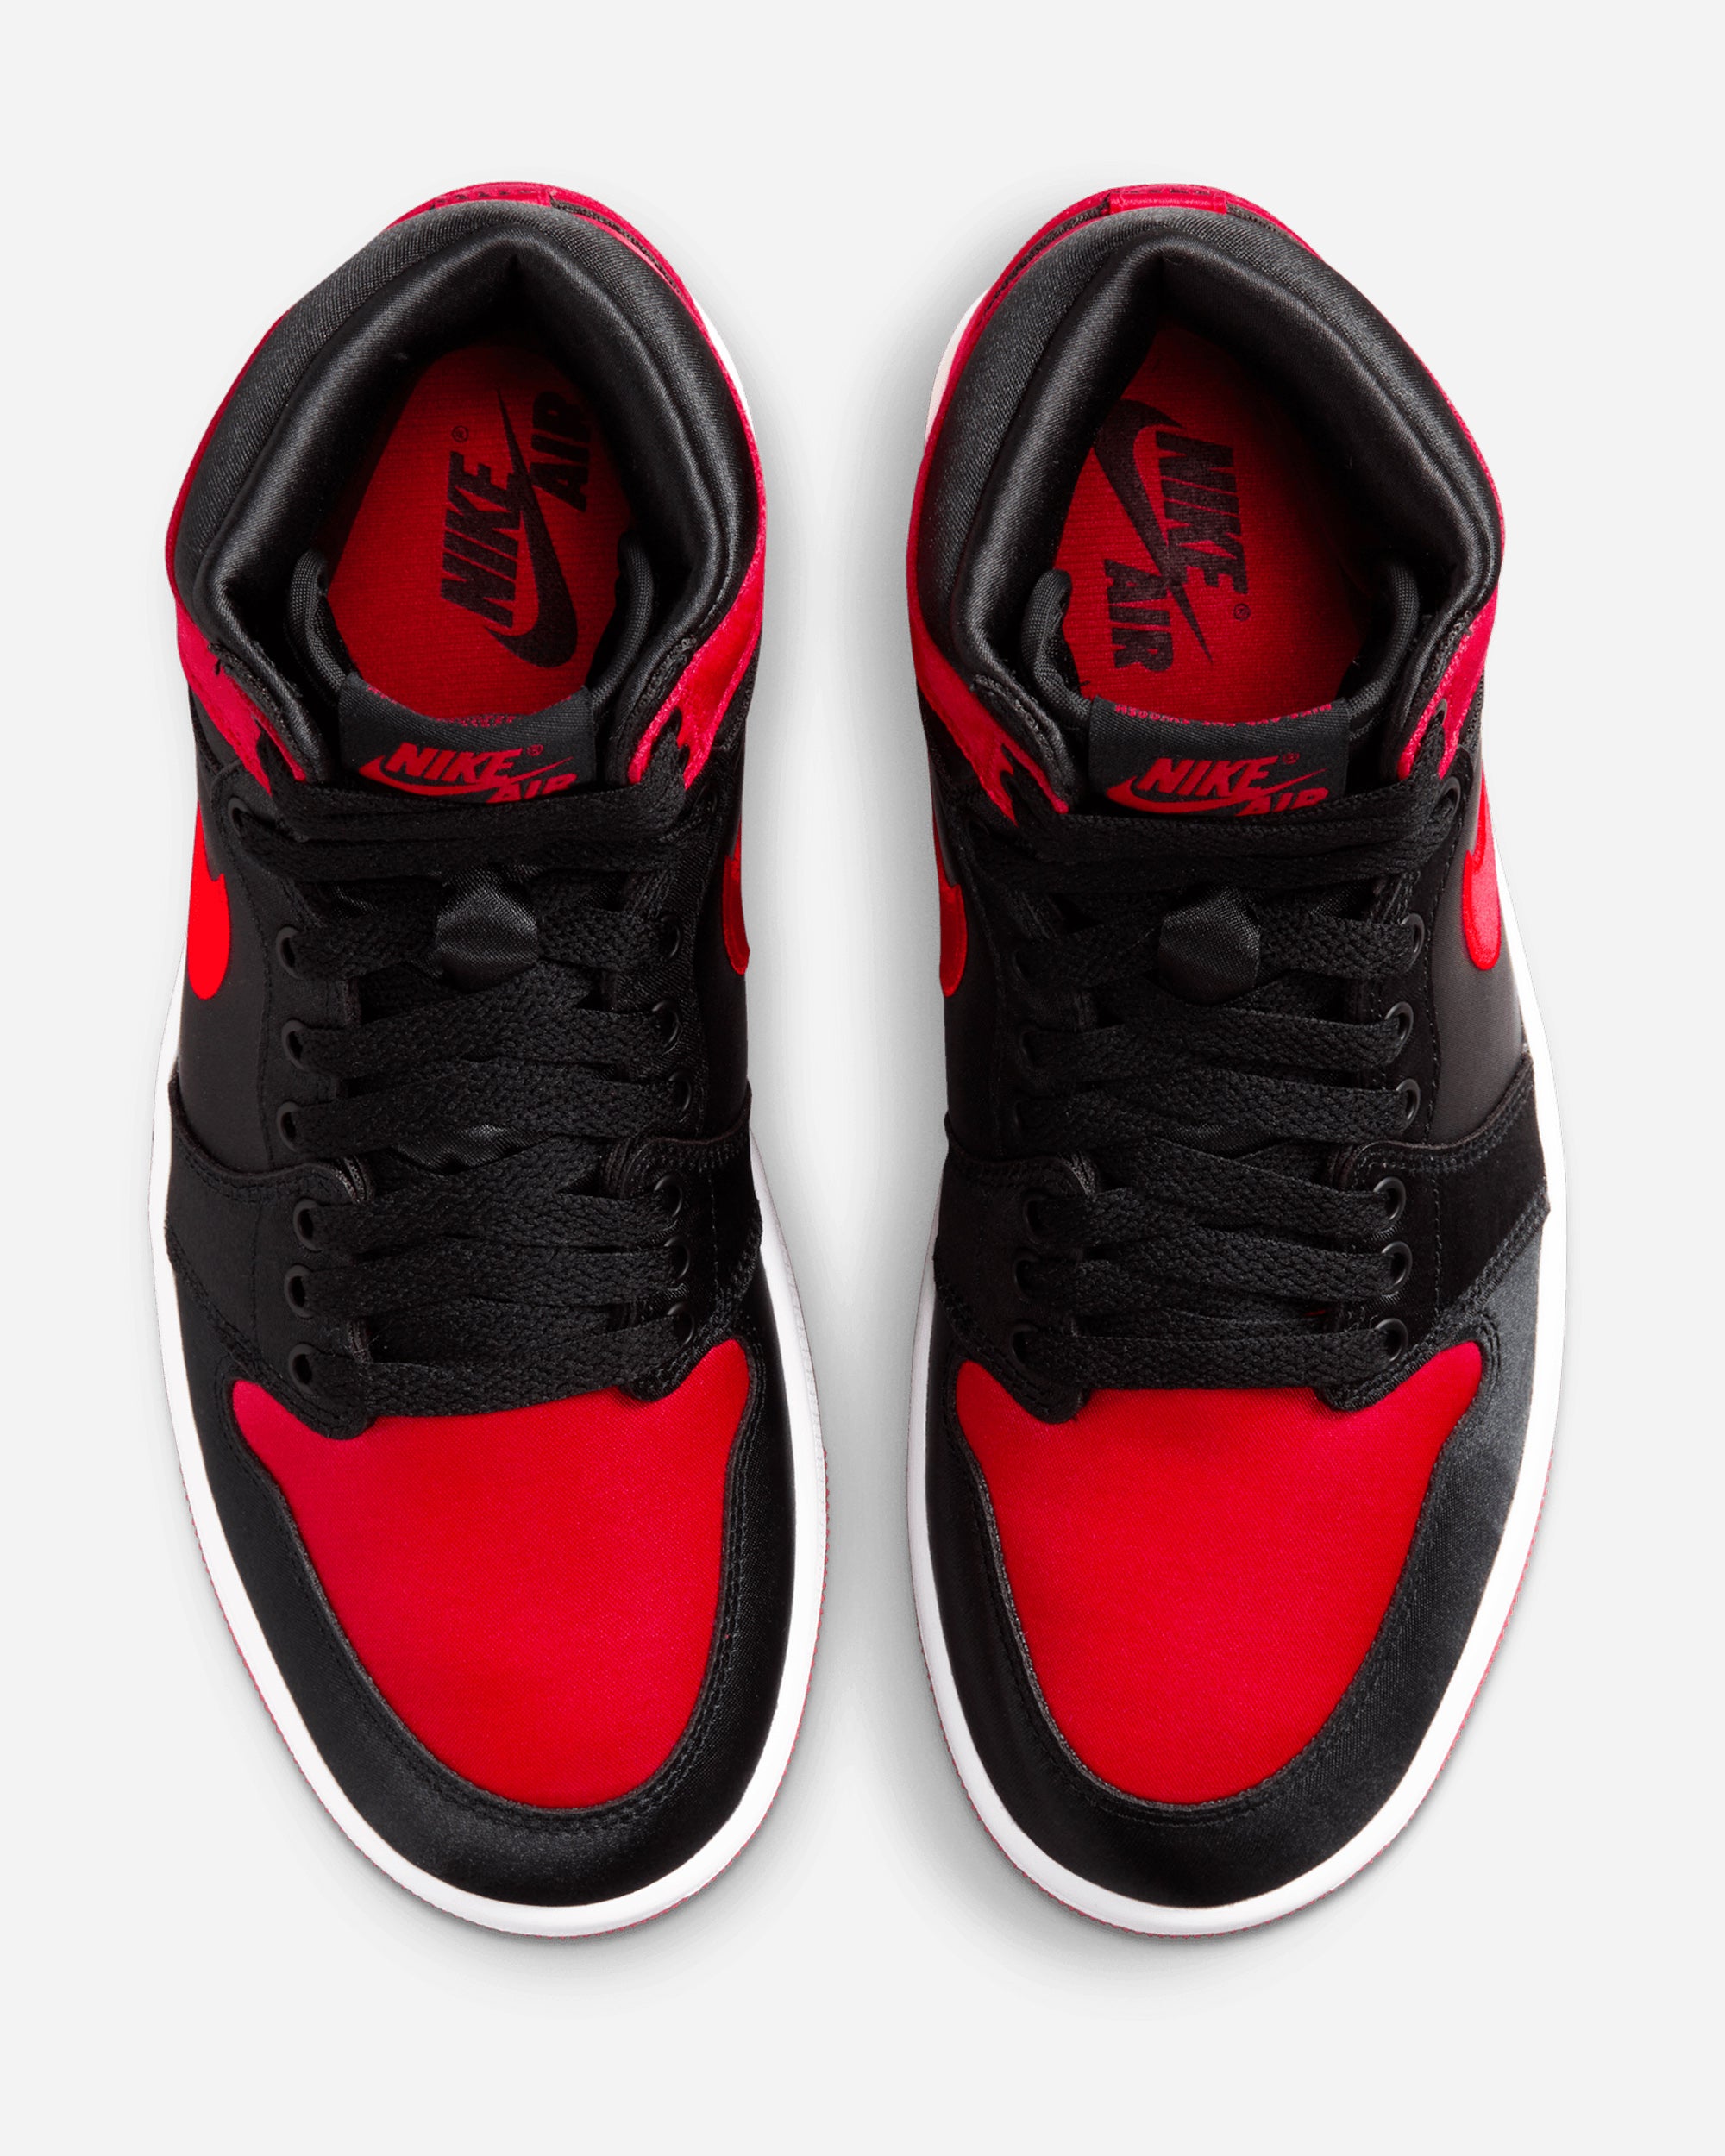 Jordan Brand Air Jordan 1 Retro High OG 'Satin Bred' BLACK/UNIVERSITY RED-WHITE FD4810-061